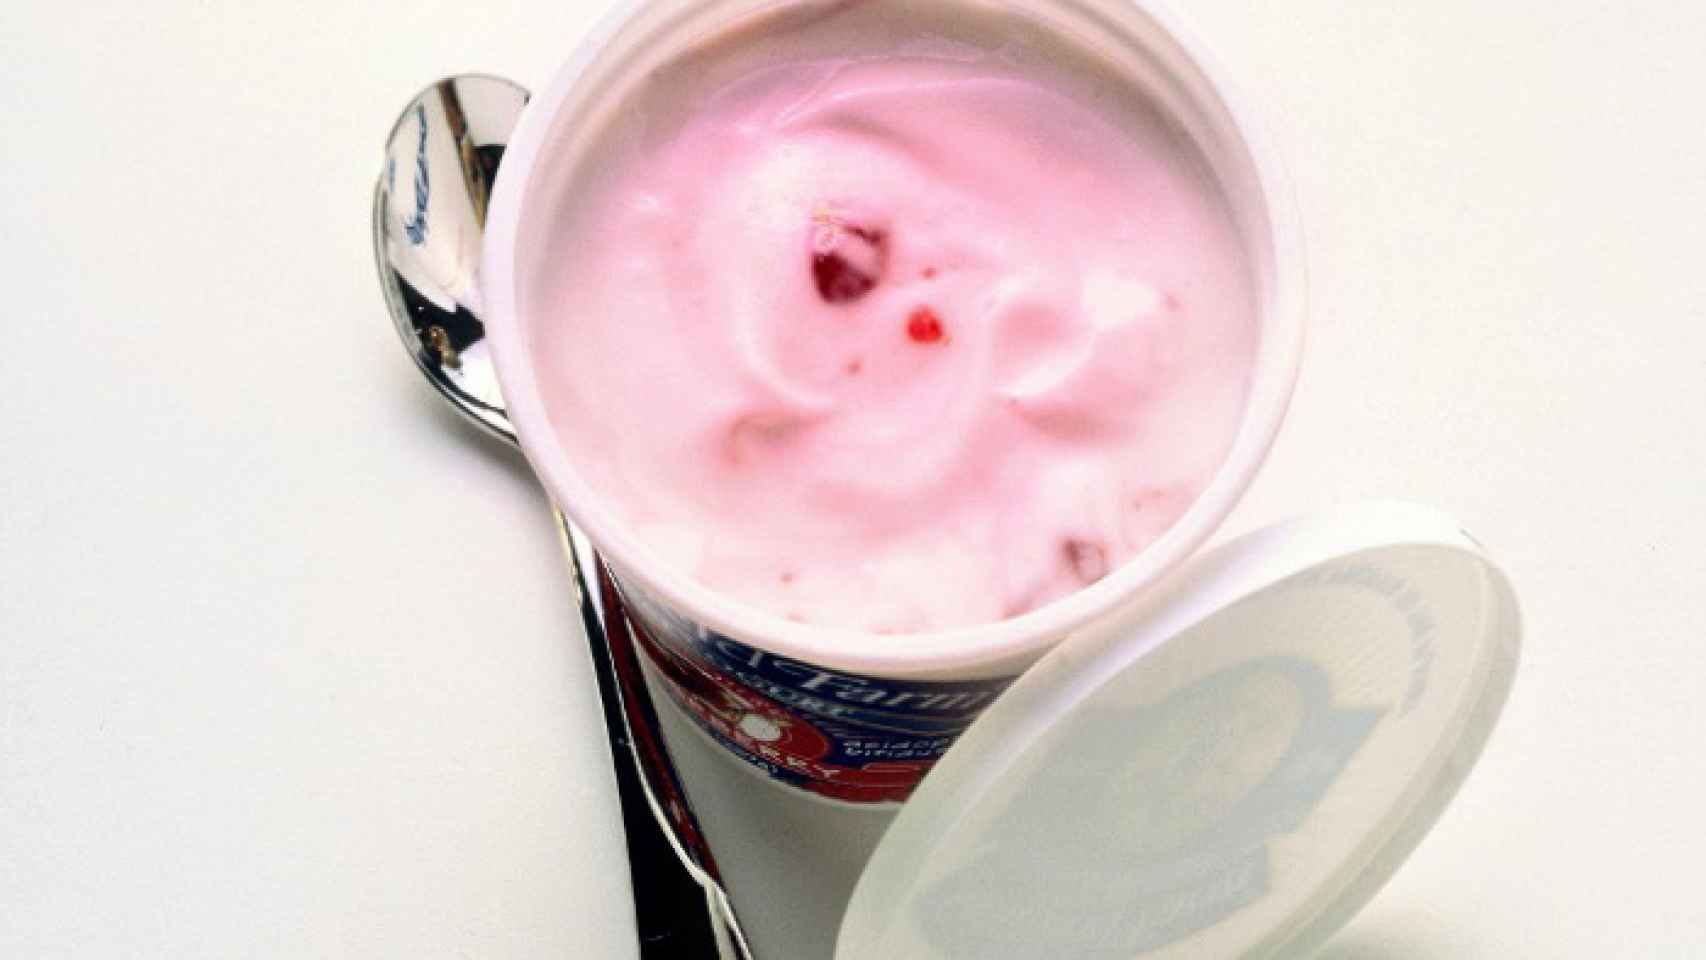 Alerta alimentaria: estos son los yogures con trozos de fruta del 'súper'  que no debe consumir